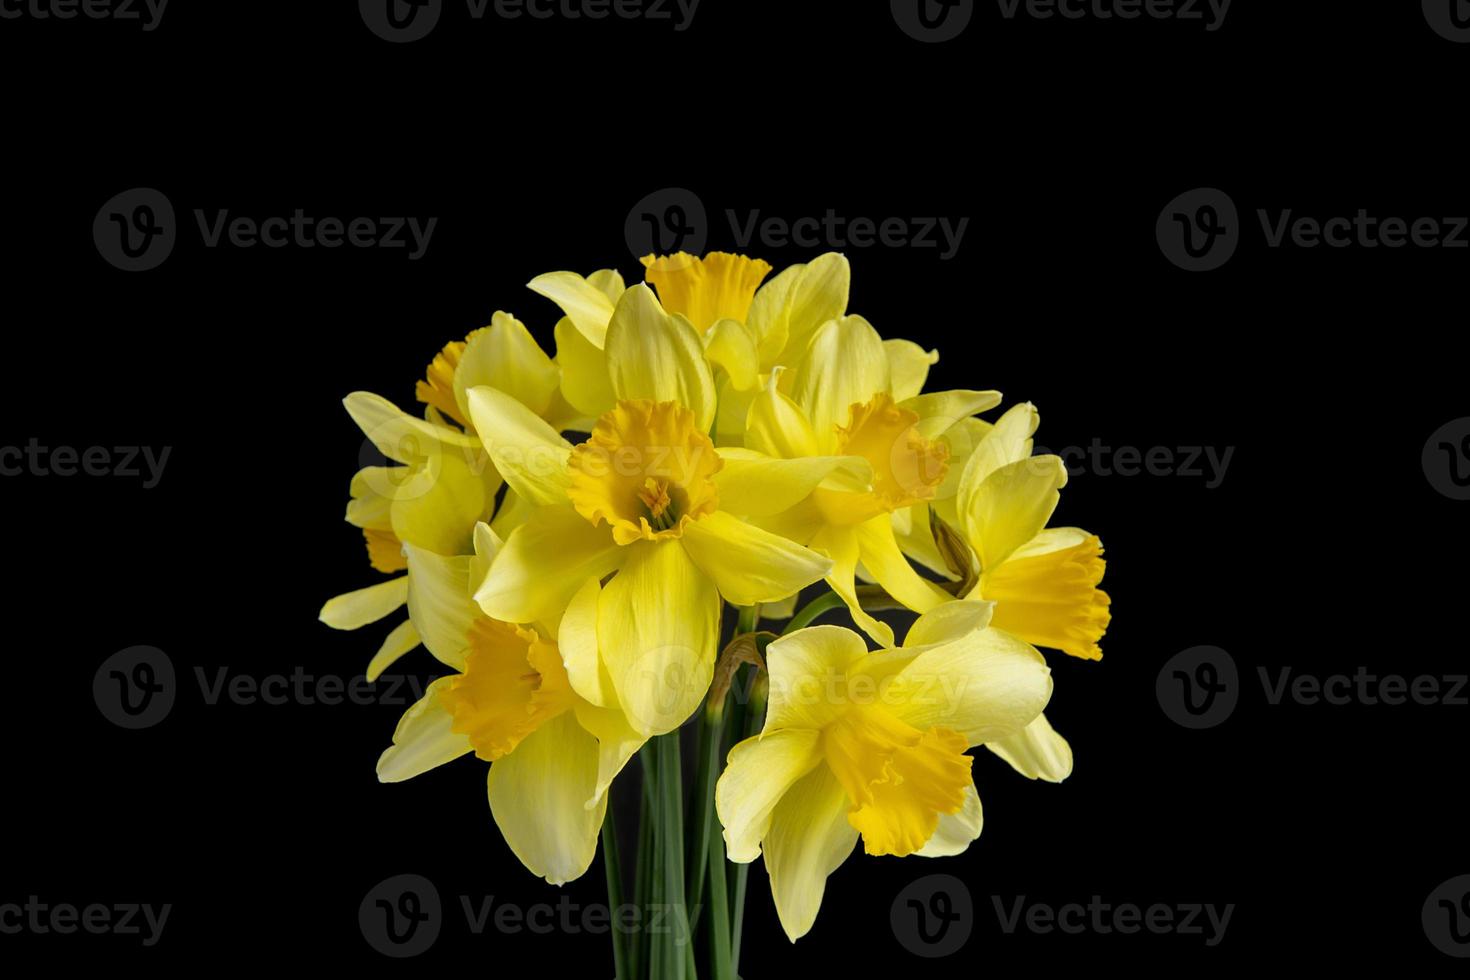 bukett av ljus gul påskliljor på en svart bakgrund foto